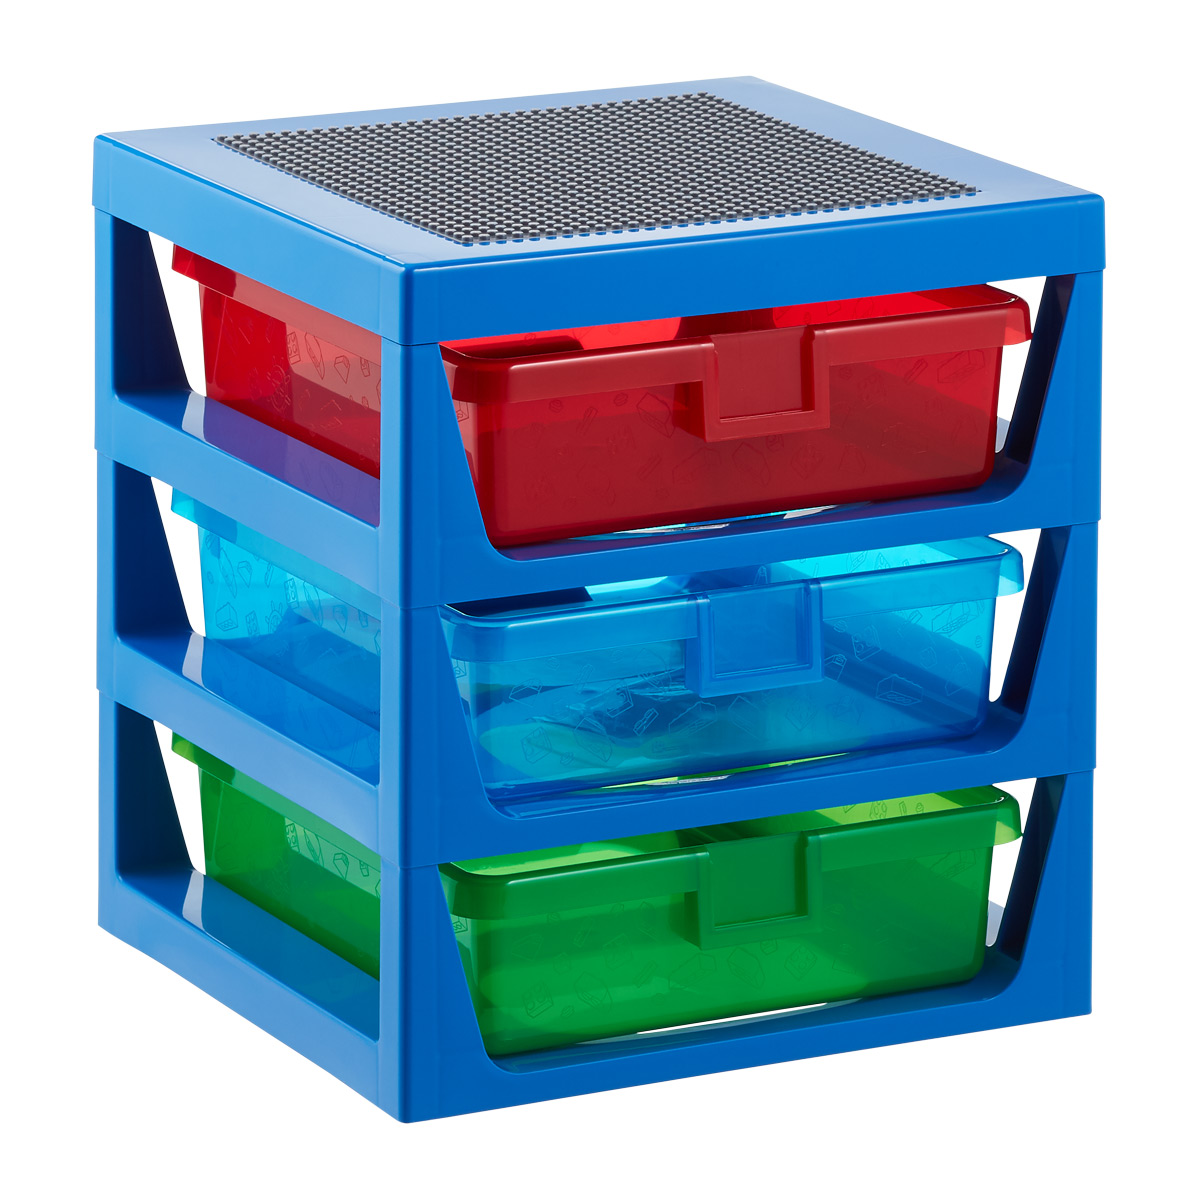 Lego tray. Lego storage. Christmas gift. Personalized Lego tray